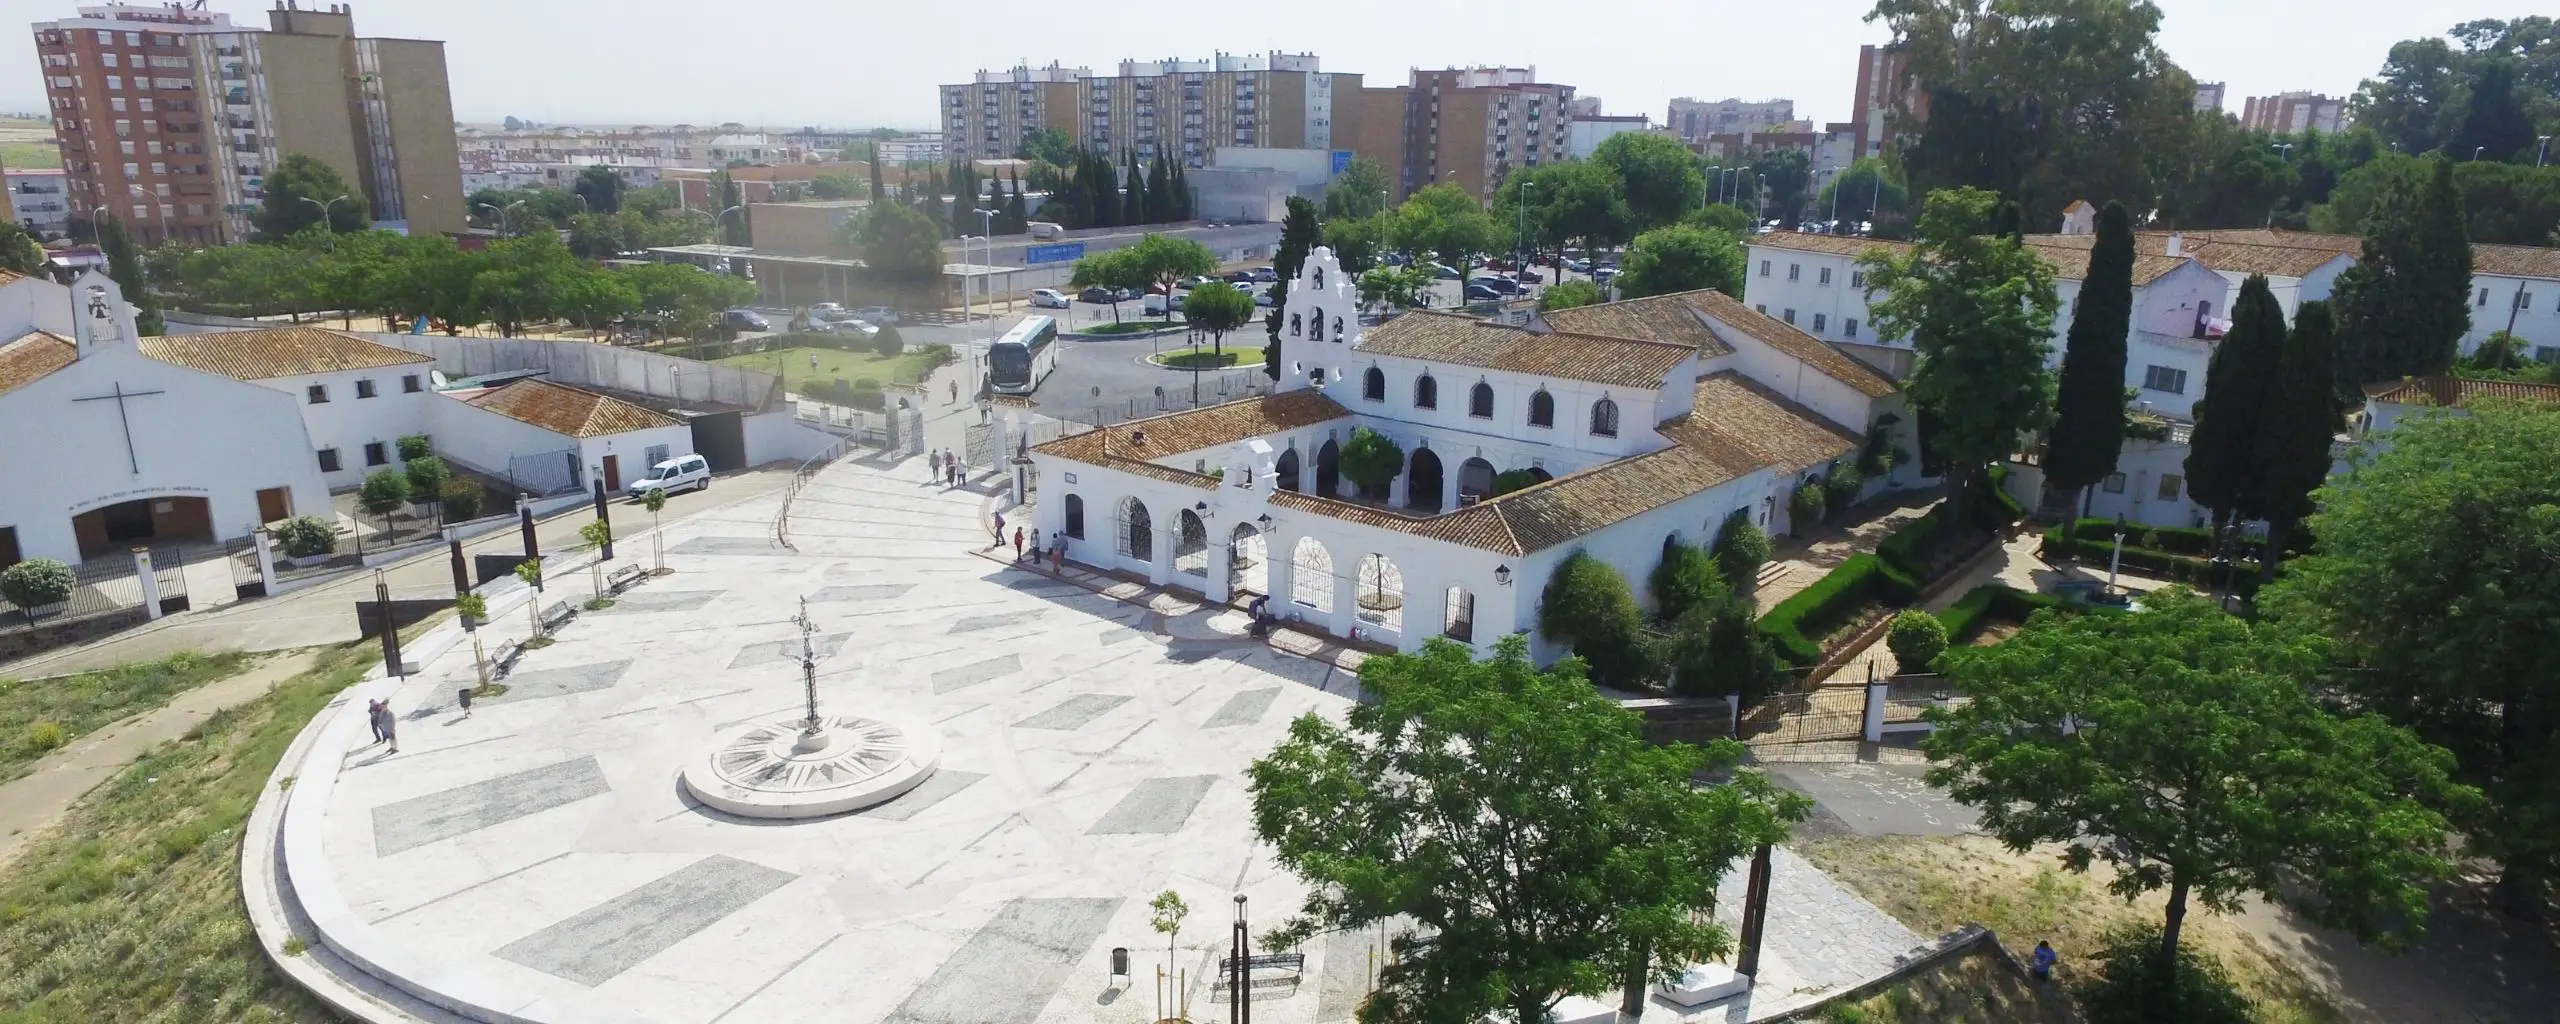 Monasterio de la Cinta, Huelva